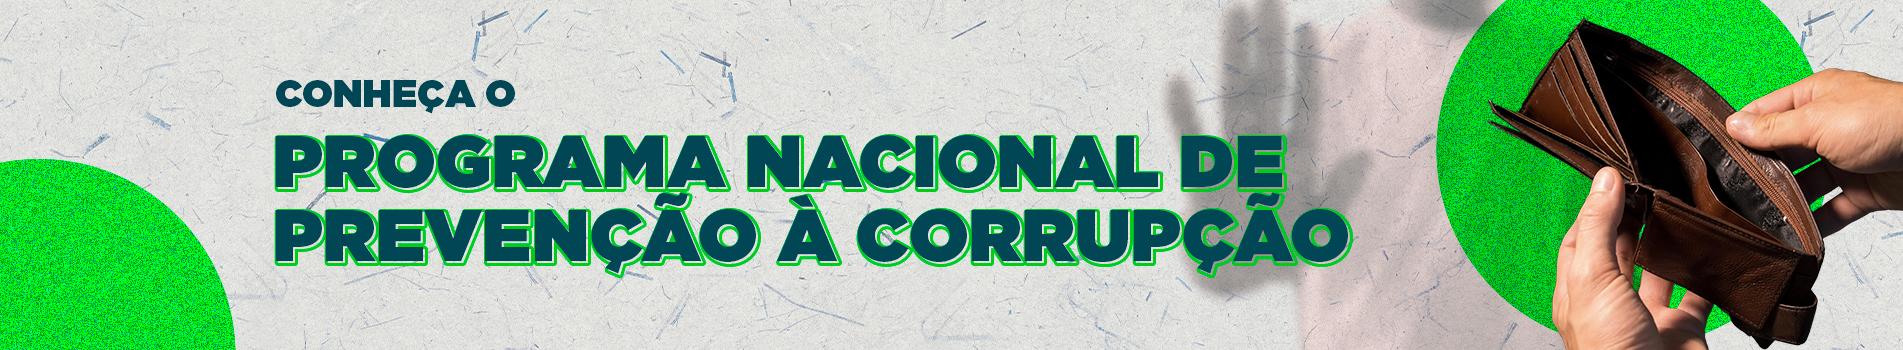 Programa Nacional de Prevenção Á Corrupção.